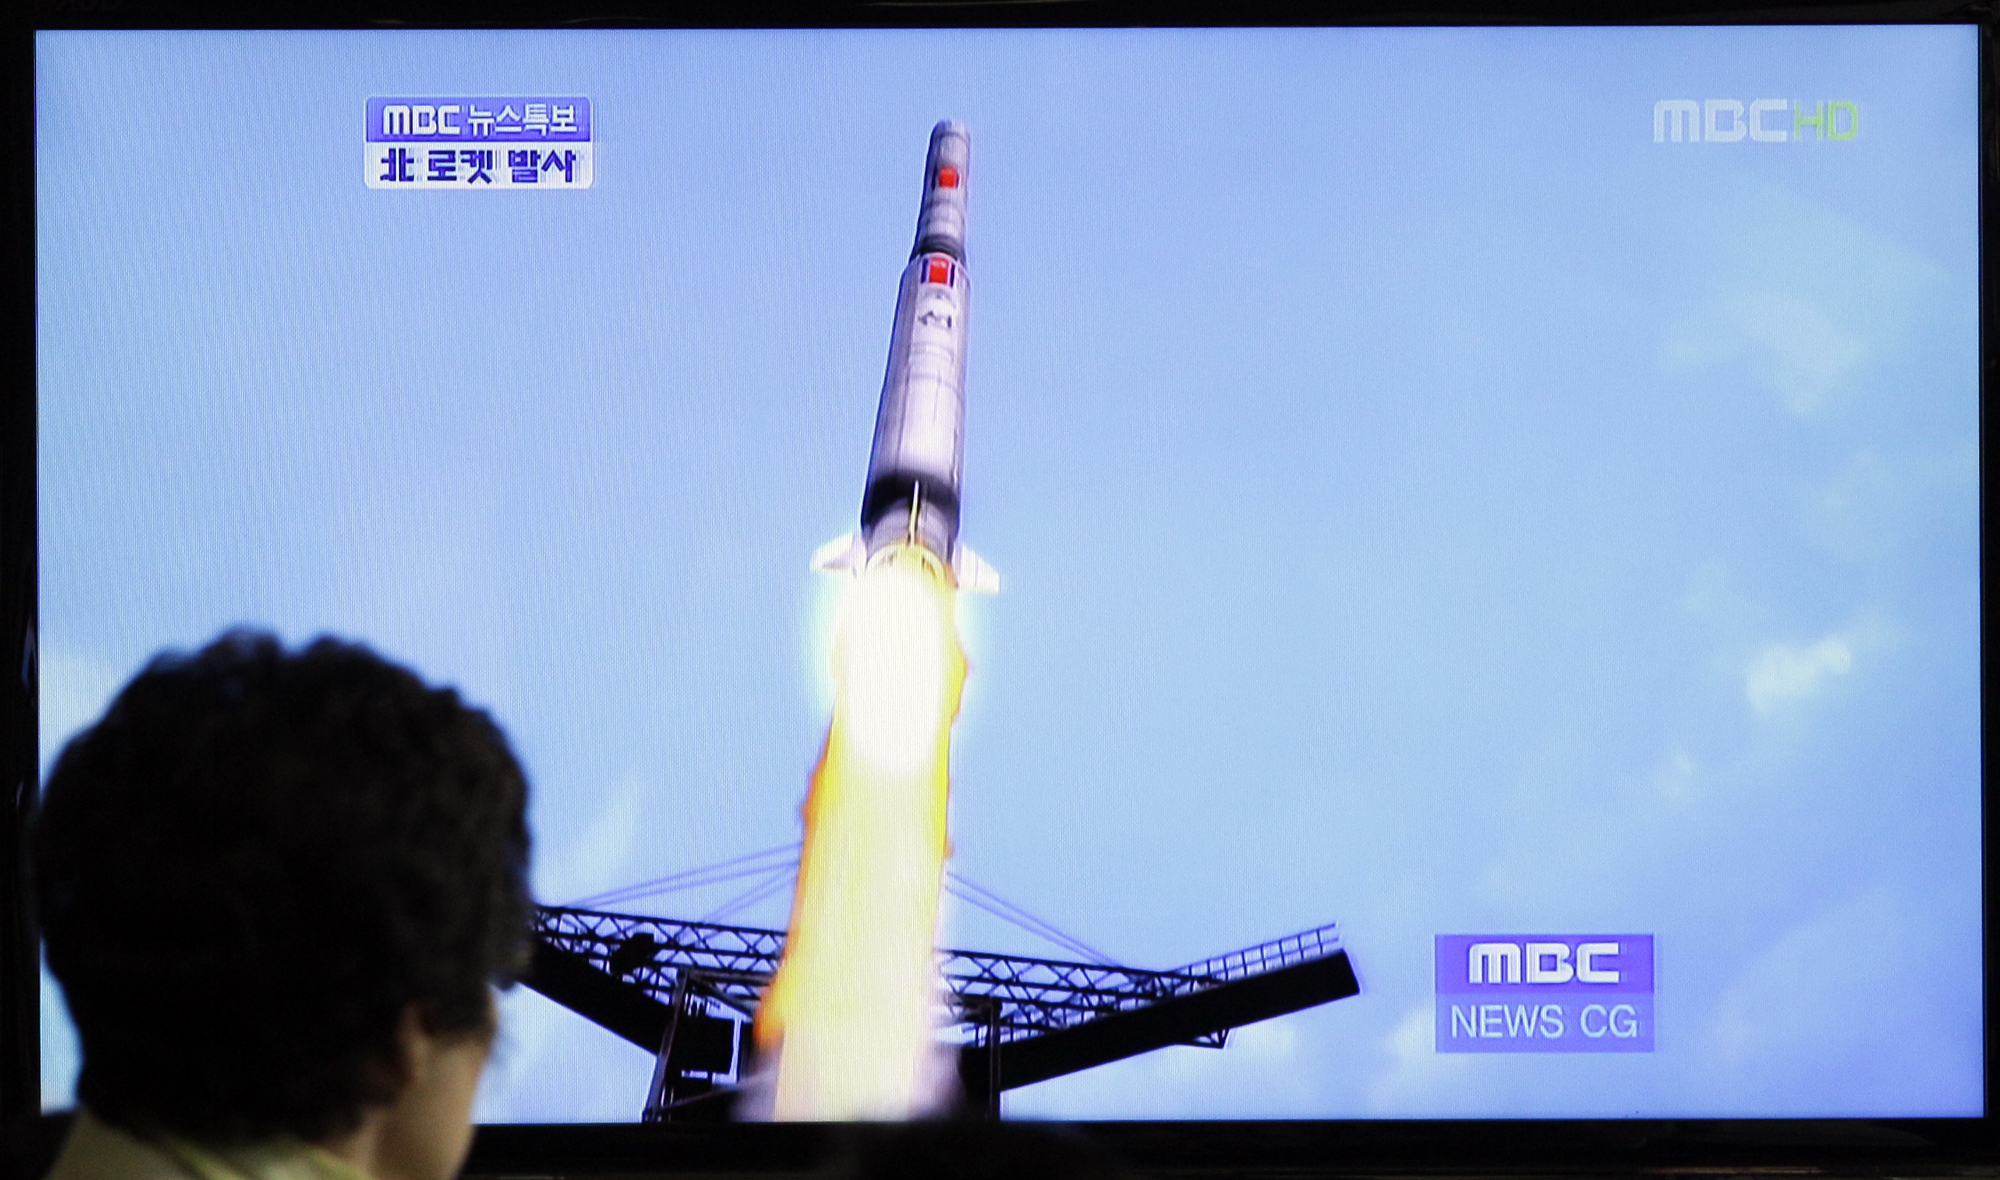 8. Du bör undvika att skjuta raketer i dag. Det blev en total flopp för Nordkorea när deras raket kraschade bara någon minut efter uppskjutningen. Raketen var tänkt som en del av firandet av landets grundare Kim il-Sungs födelsedag.